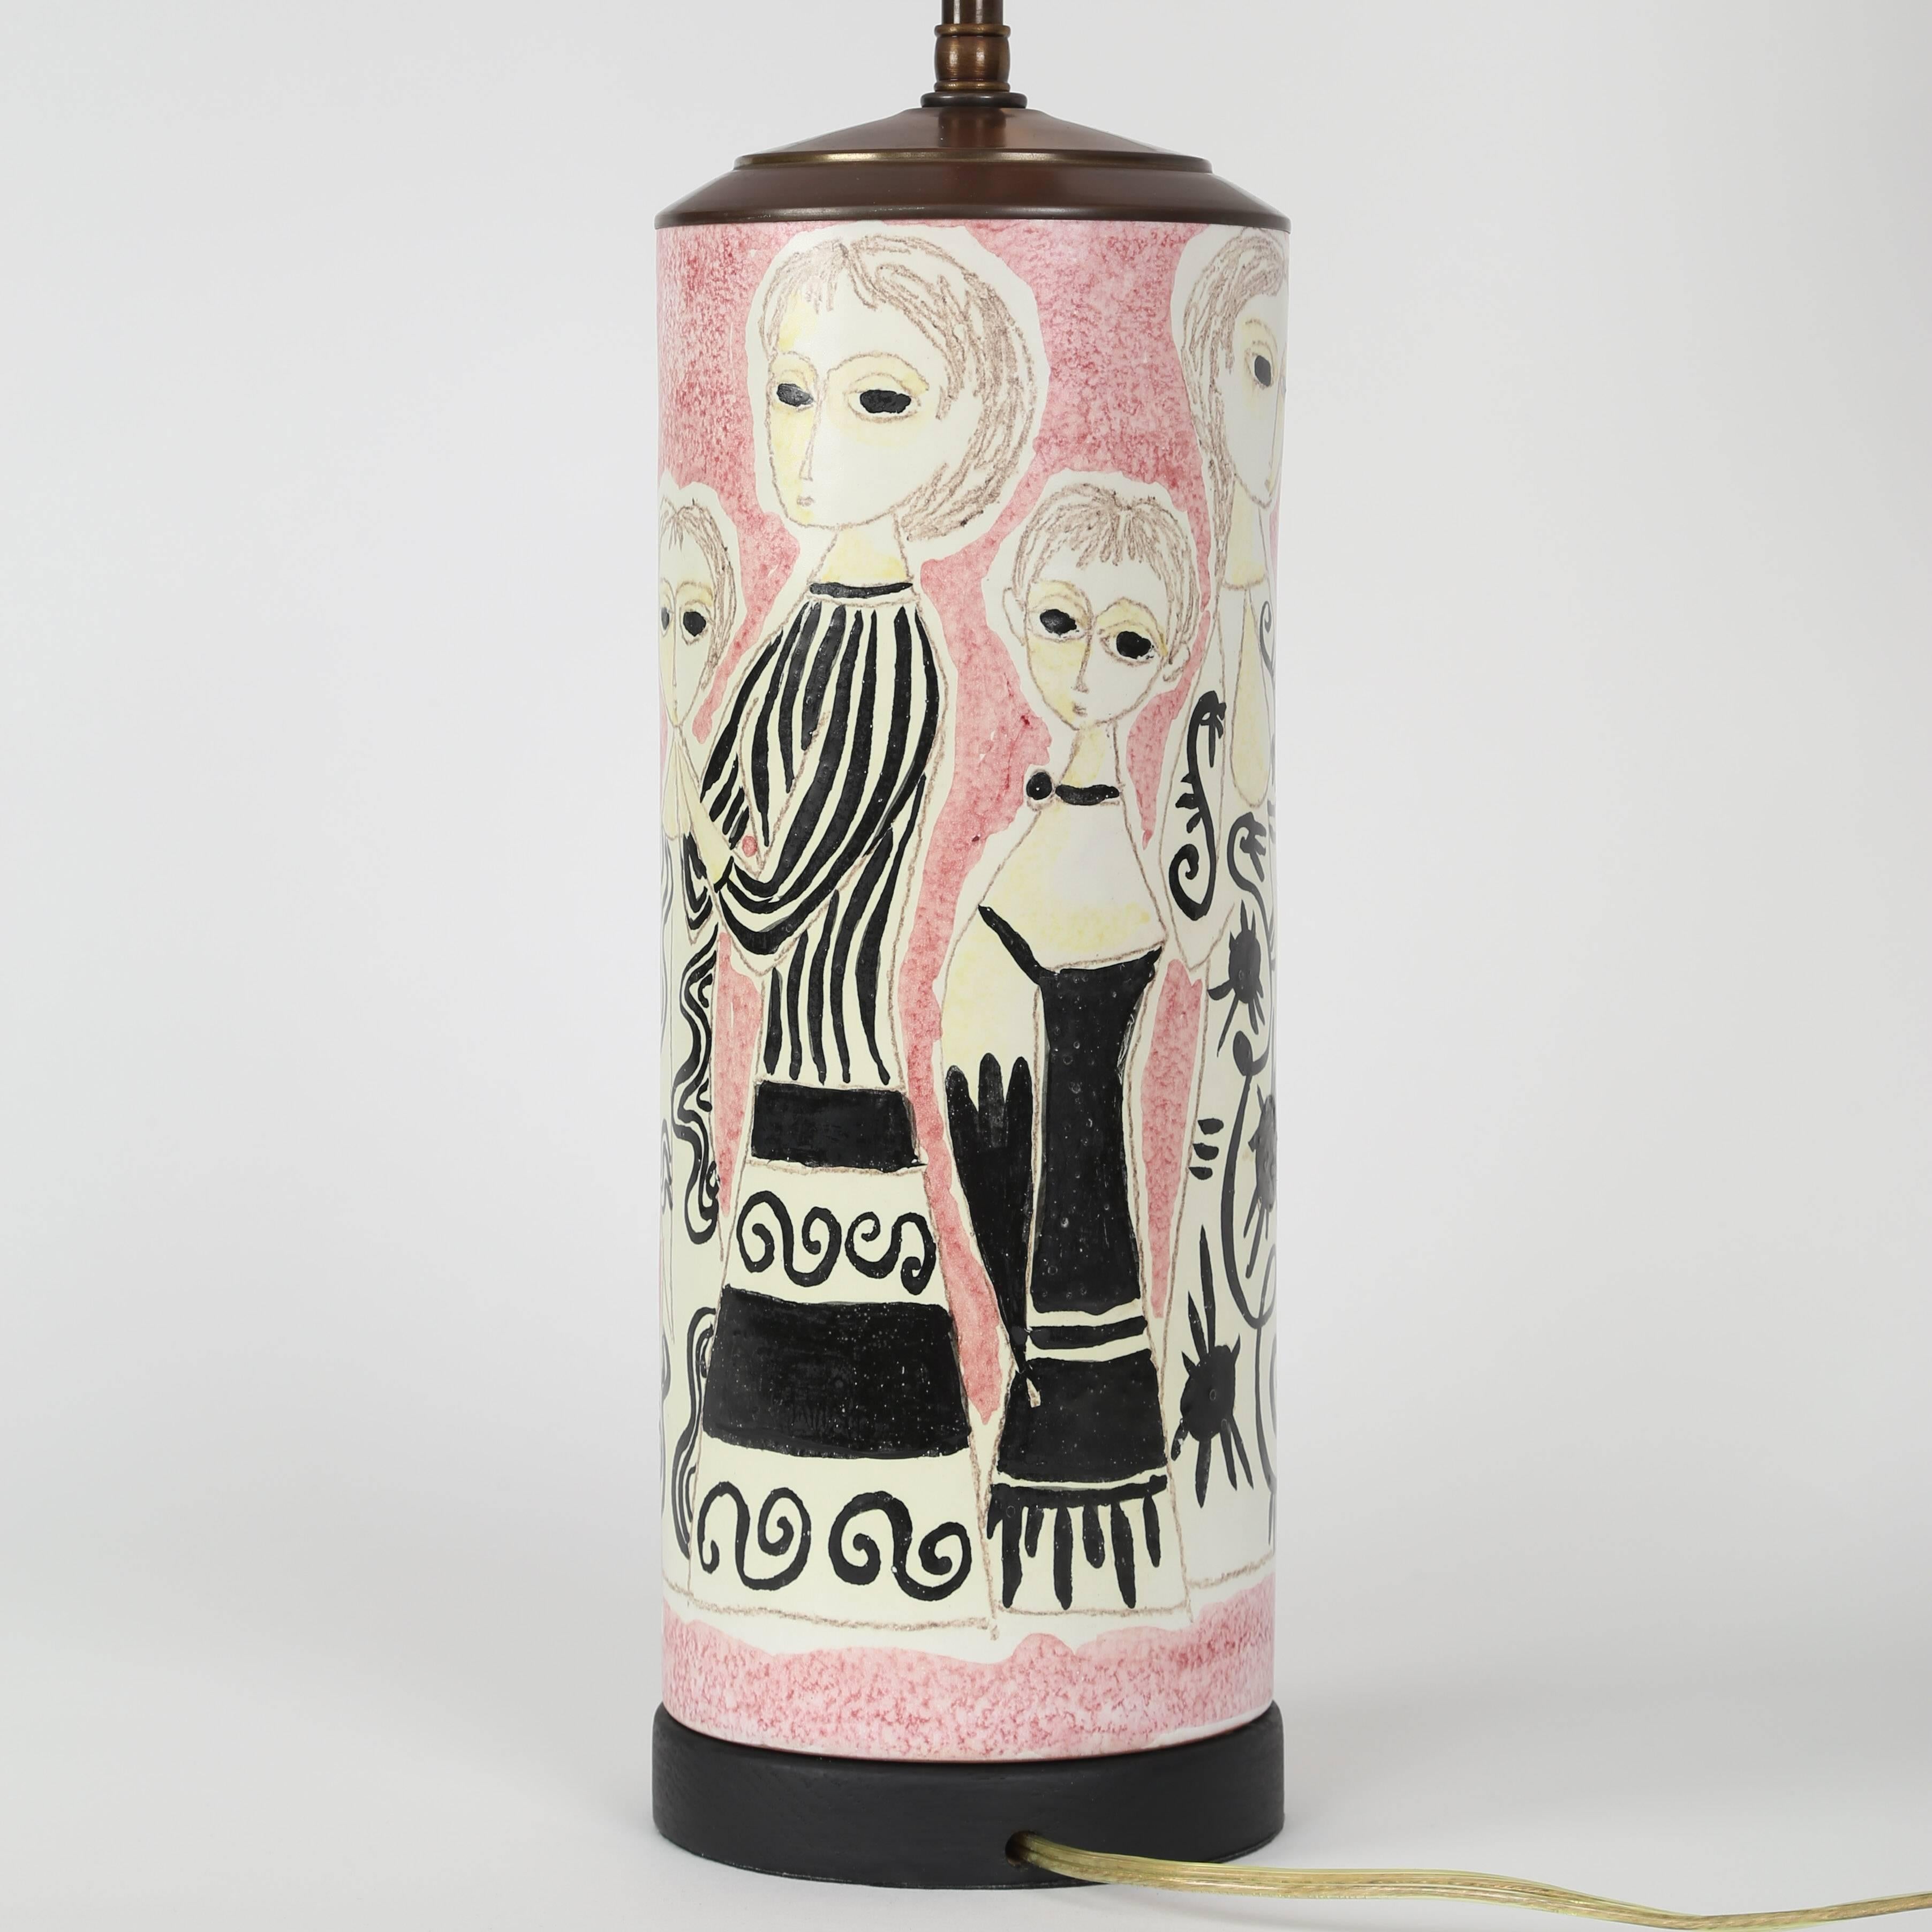 Partykleid-Tischlampe aus Keramik von Marcello Fantoni, ca. 1960er Jahre (Glasiert)